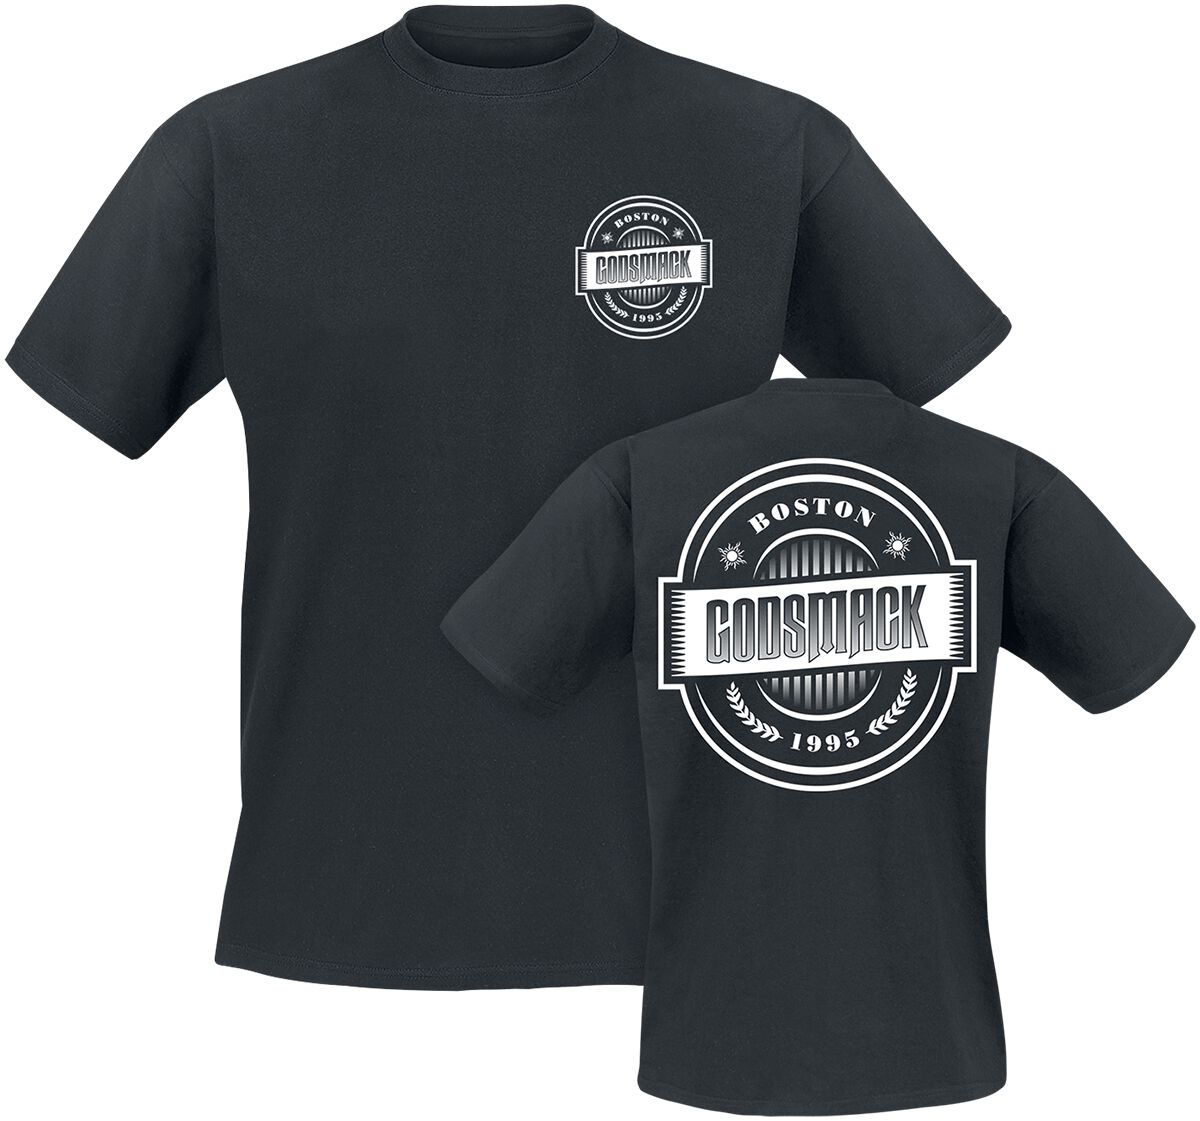 Godsmack T-Shirt - 1995 - S bis 3XL - für Männer - Größe 3XL - schwarz  - Lizenziertes Merchandise!